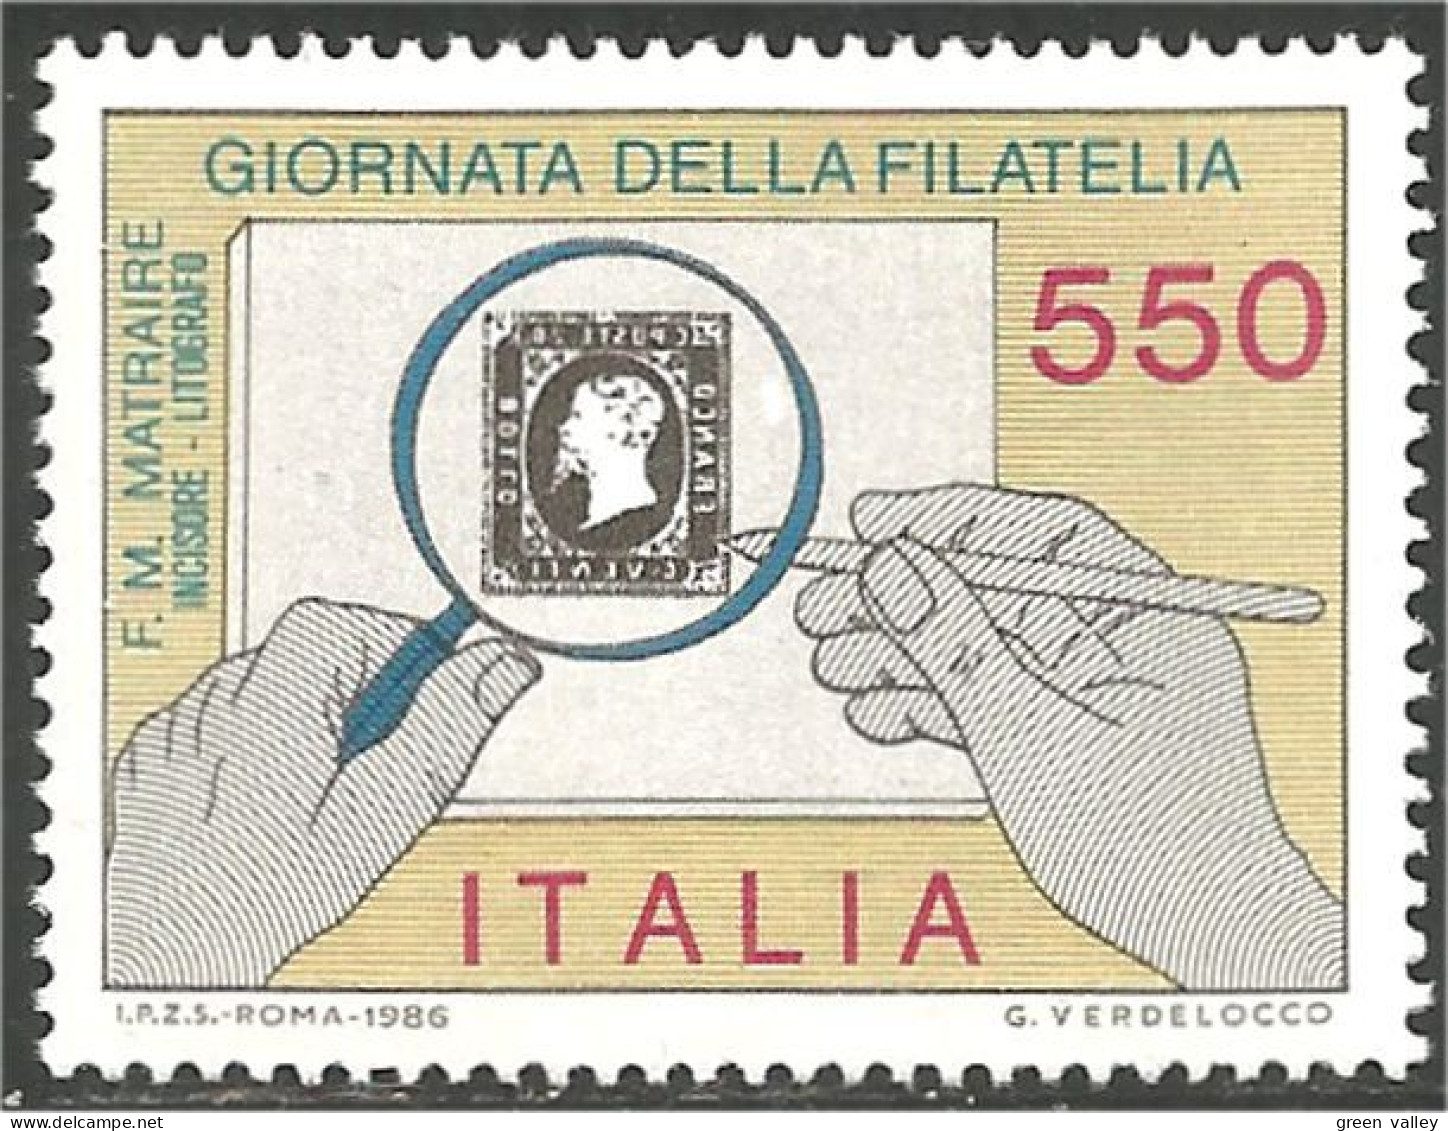 TT-14 Italie Journée Timbre Stamp Day 1986 MNH ** Neuf SC - Briefmarken Auf Briefmarken